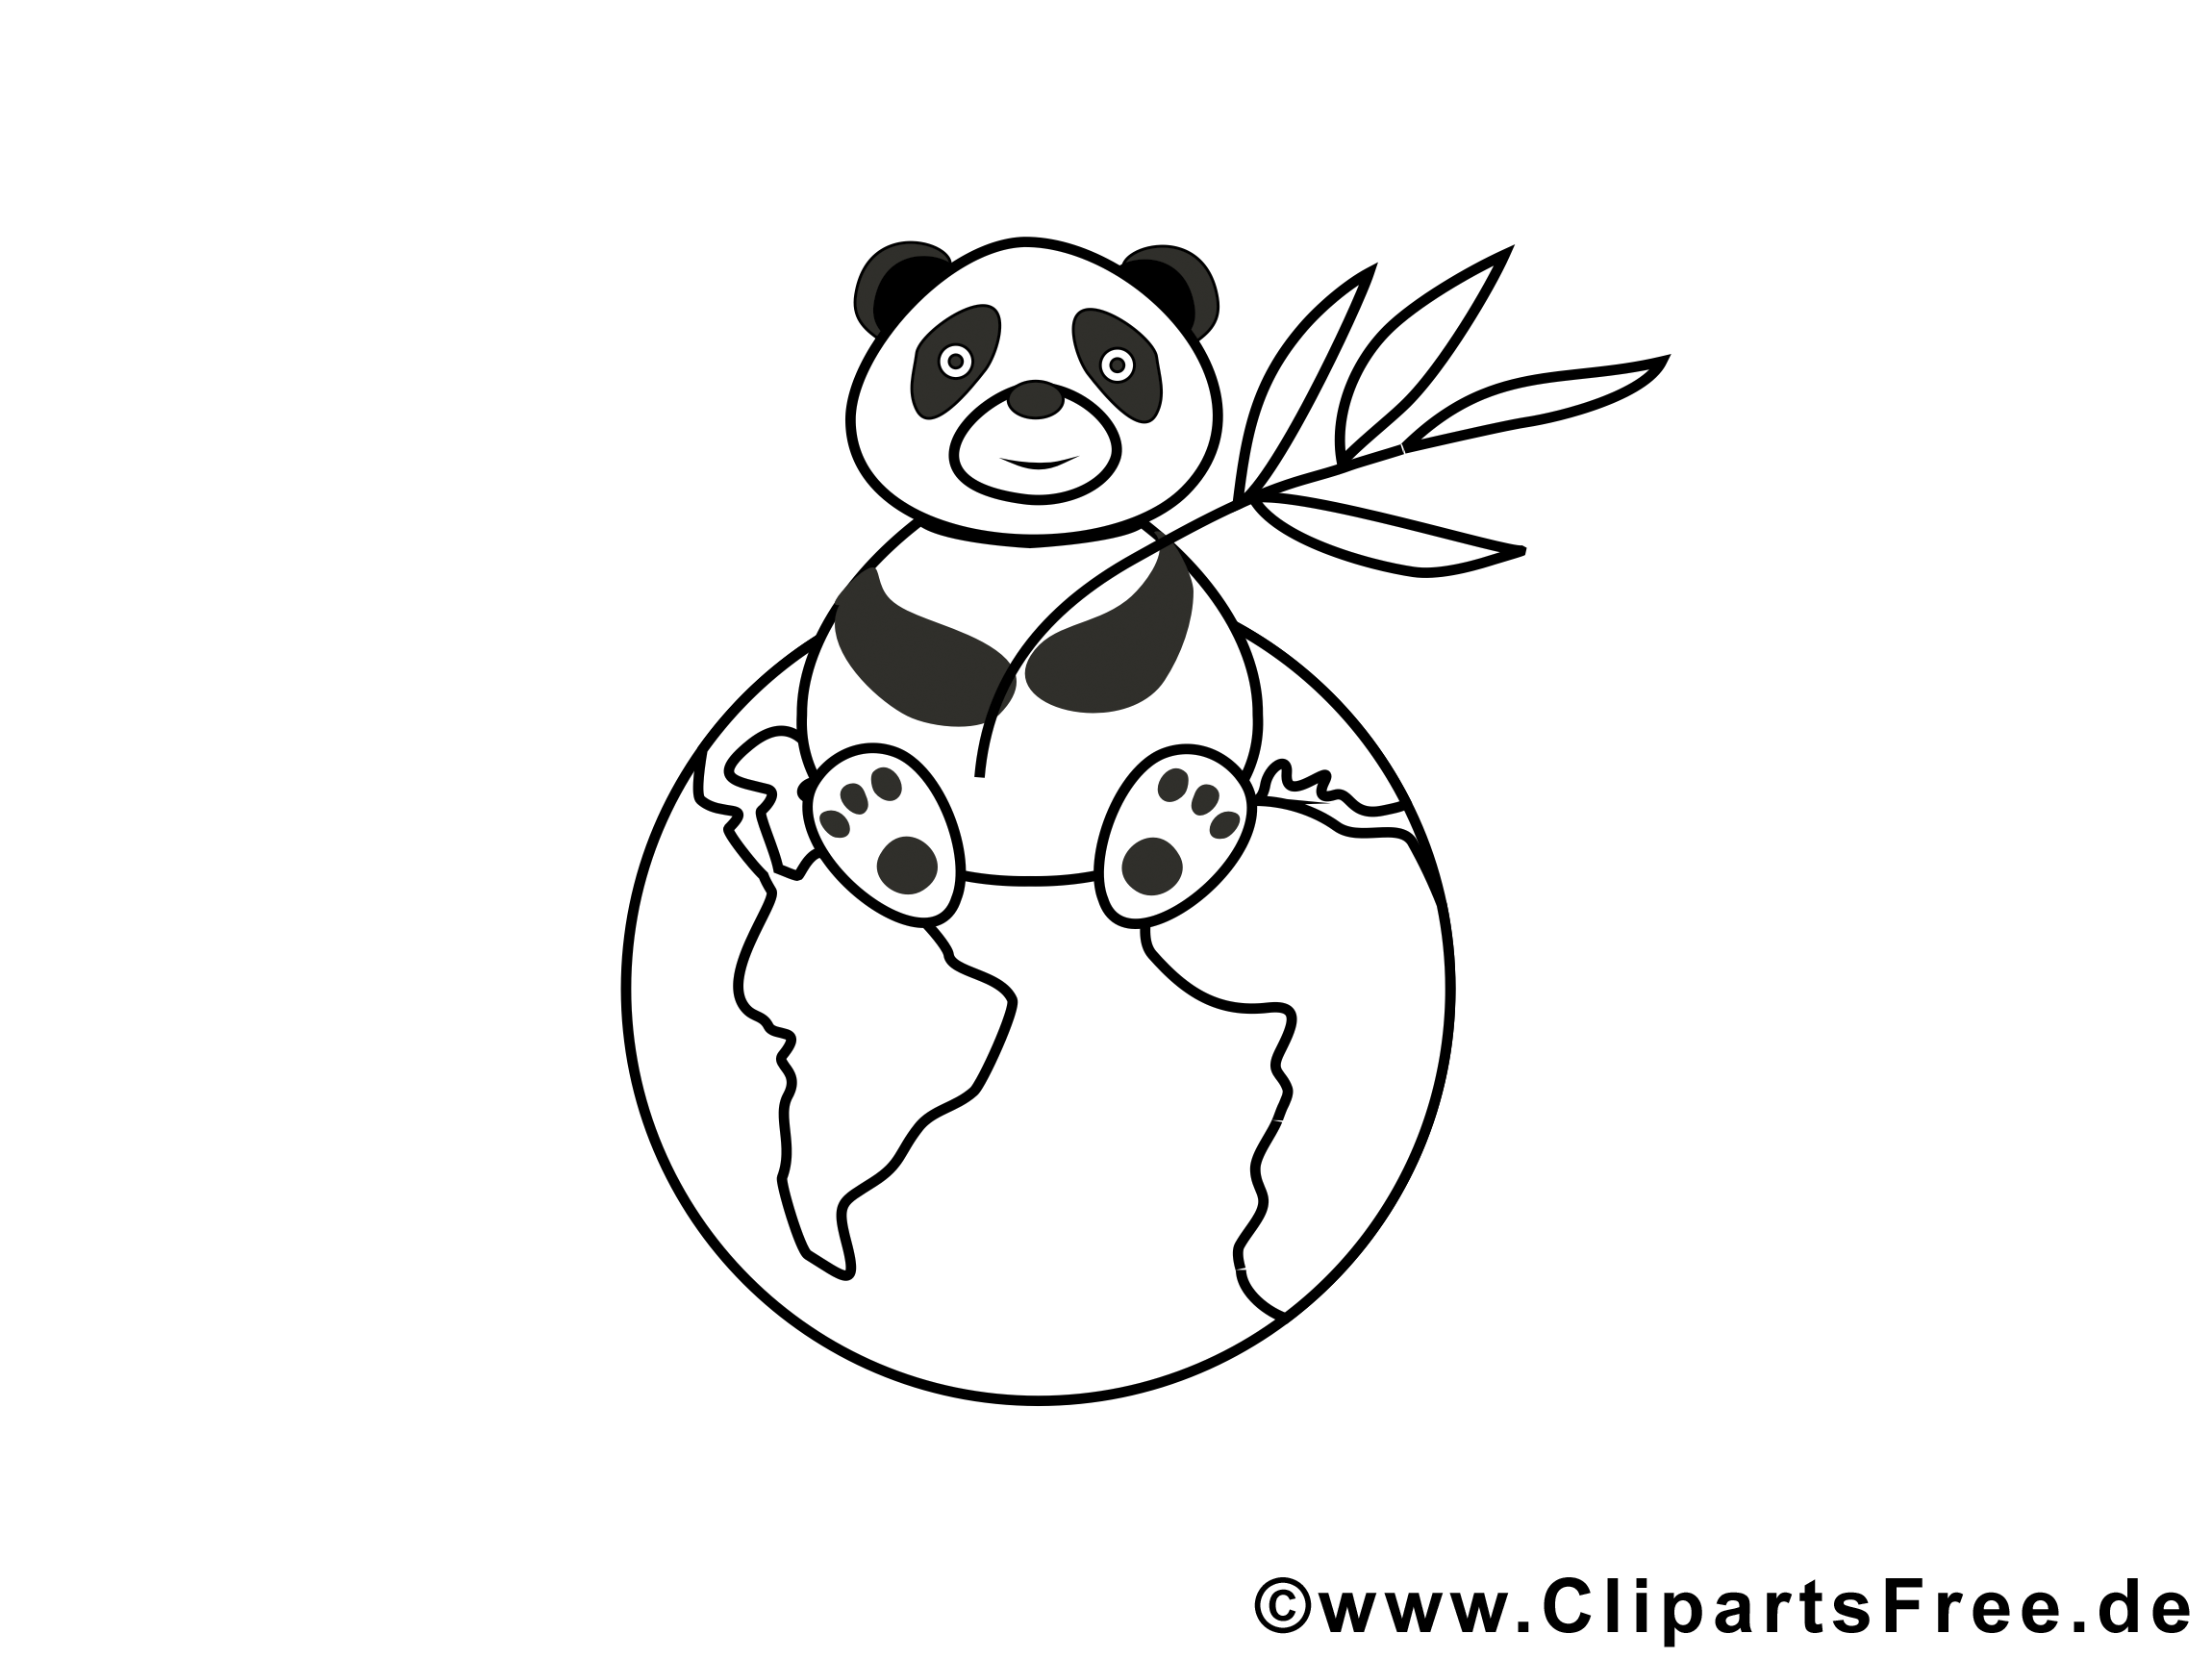 Panda images – Zoo gratuits à imprimer